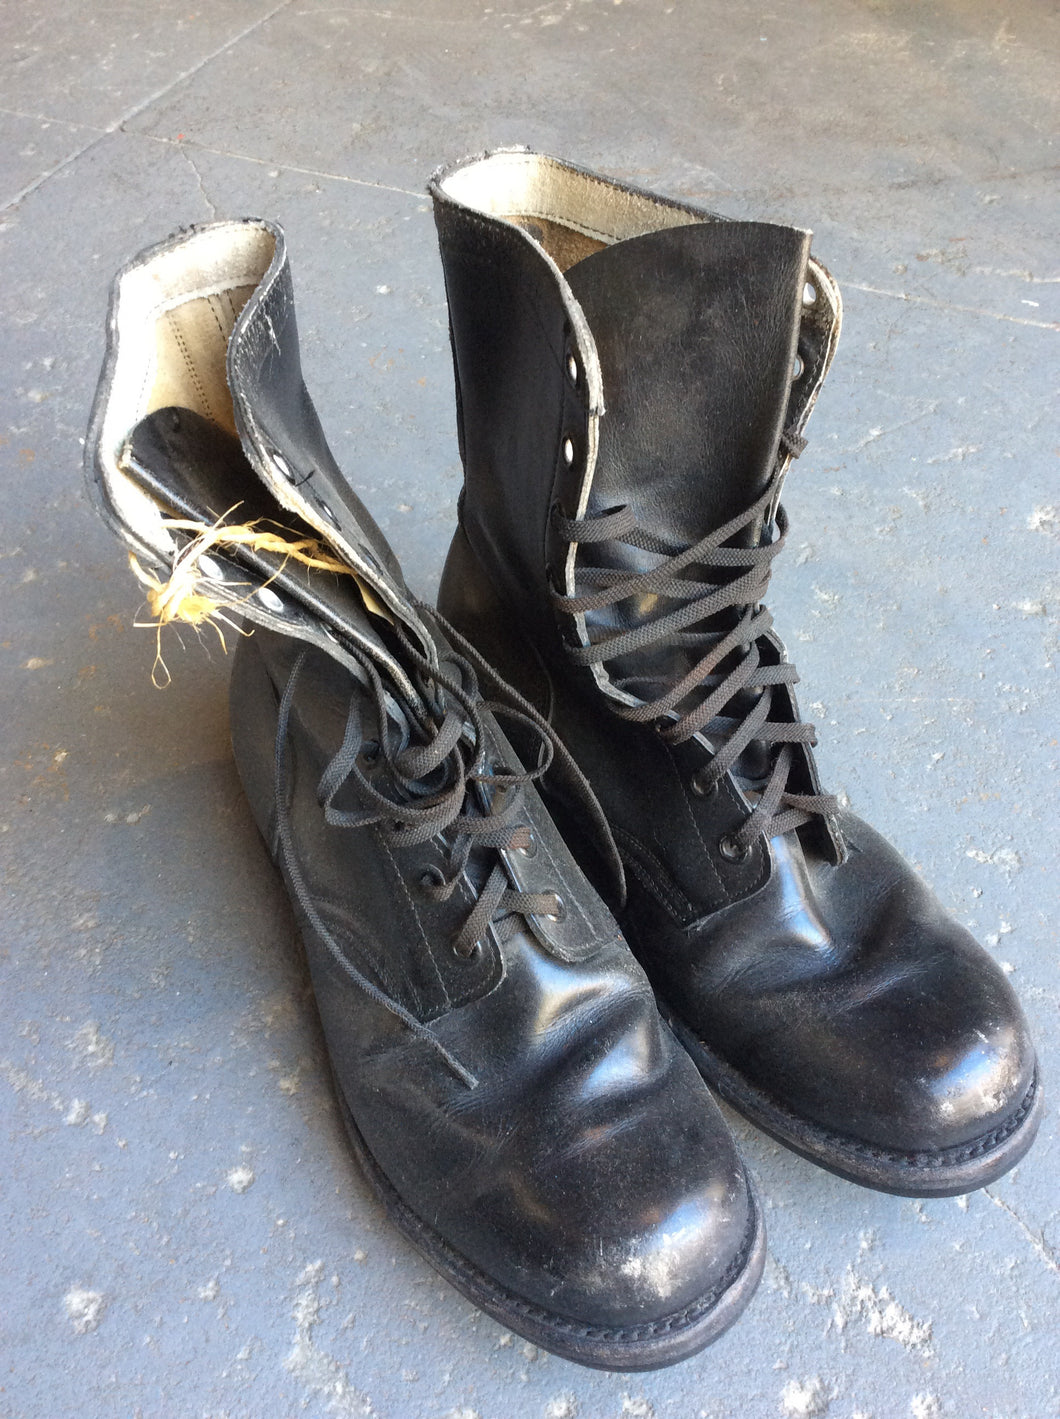 biltrite combat boots